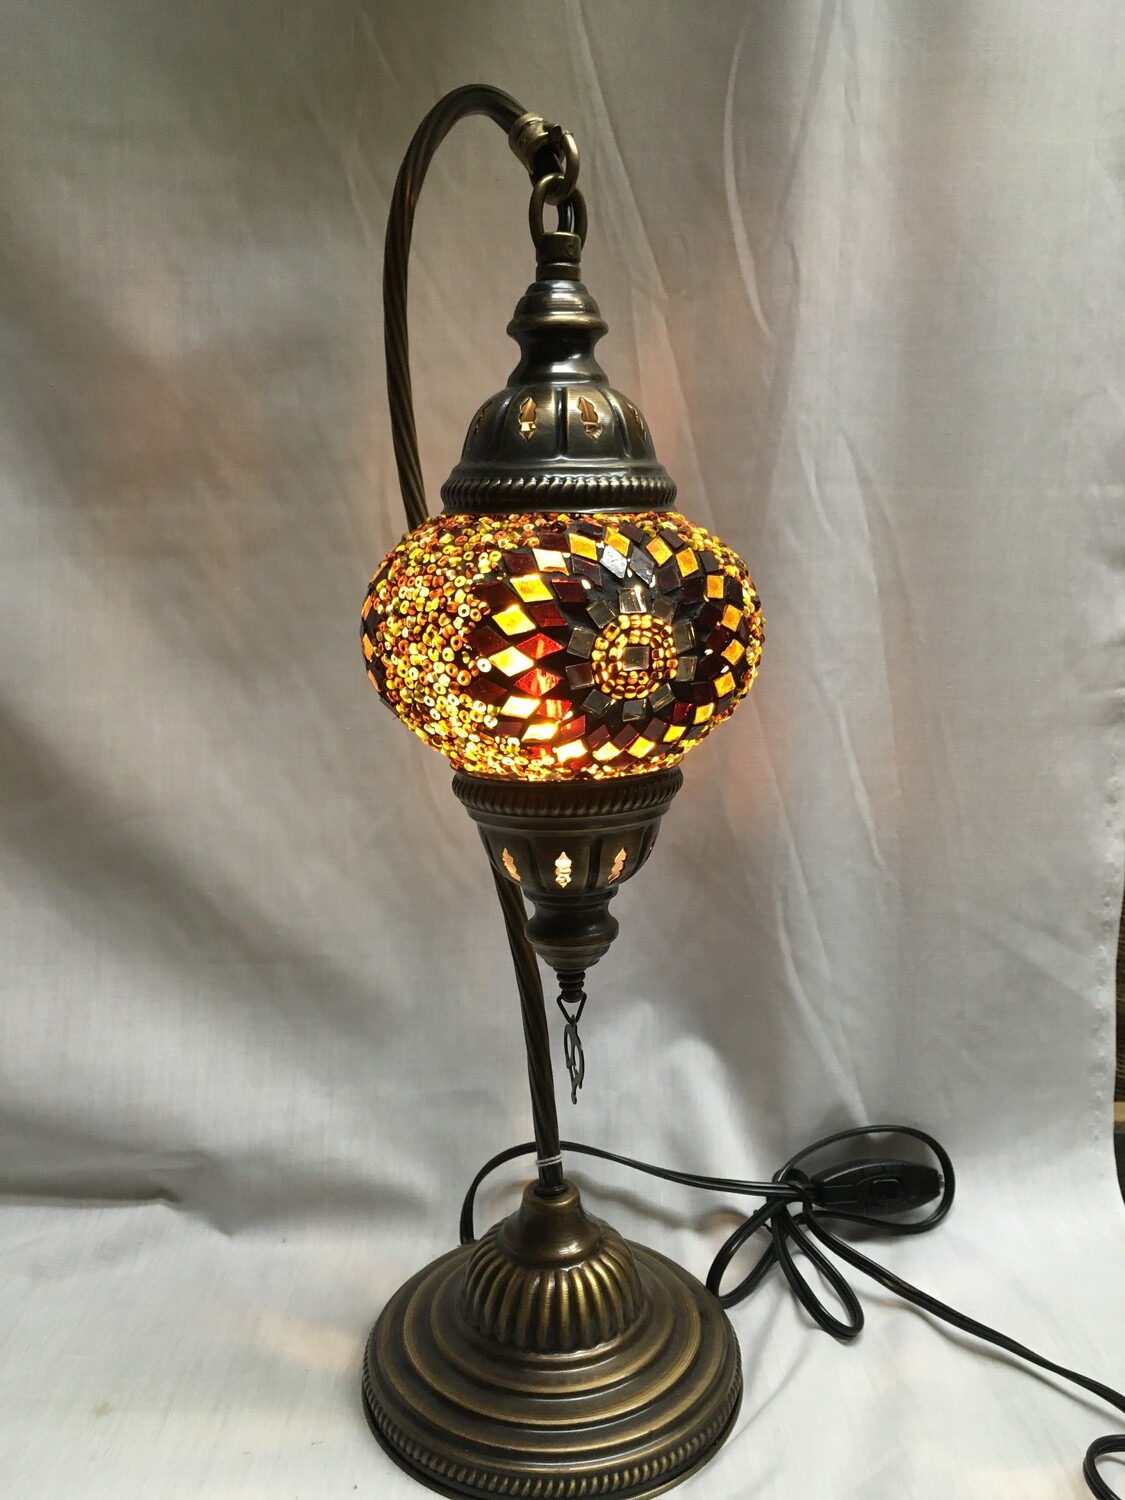 Mosaic Glass Table Lamp, Rust/Brown Circular Design